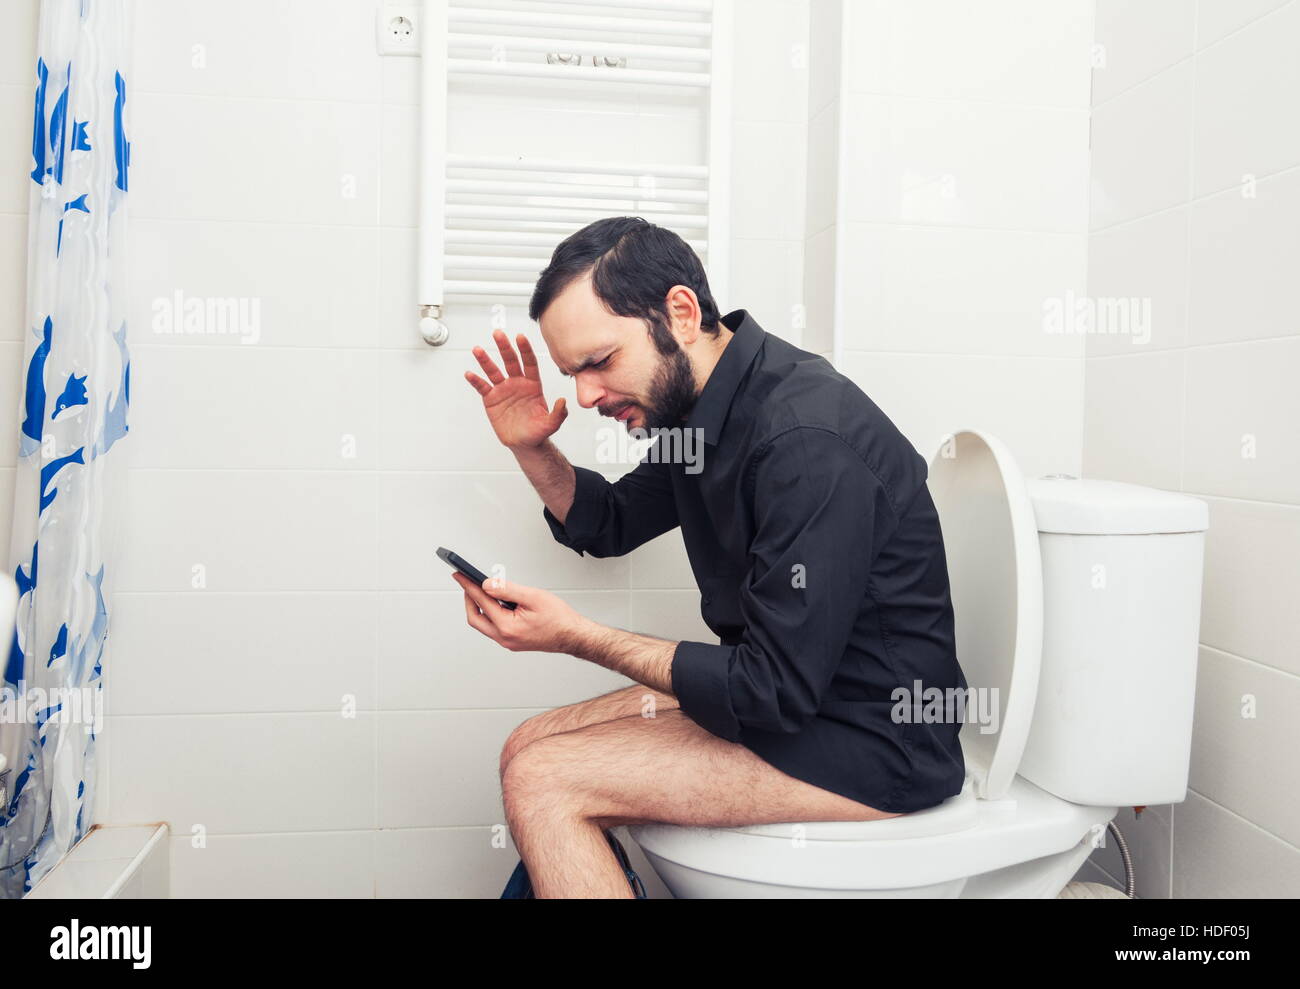 Mann in der Toilette sitzen und telefonieren Stockfotografie - Alamy